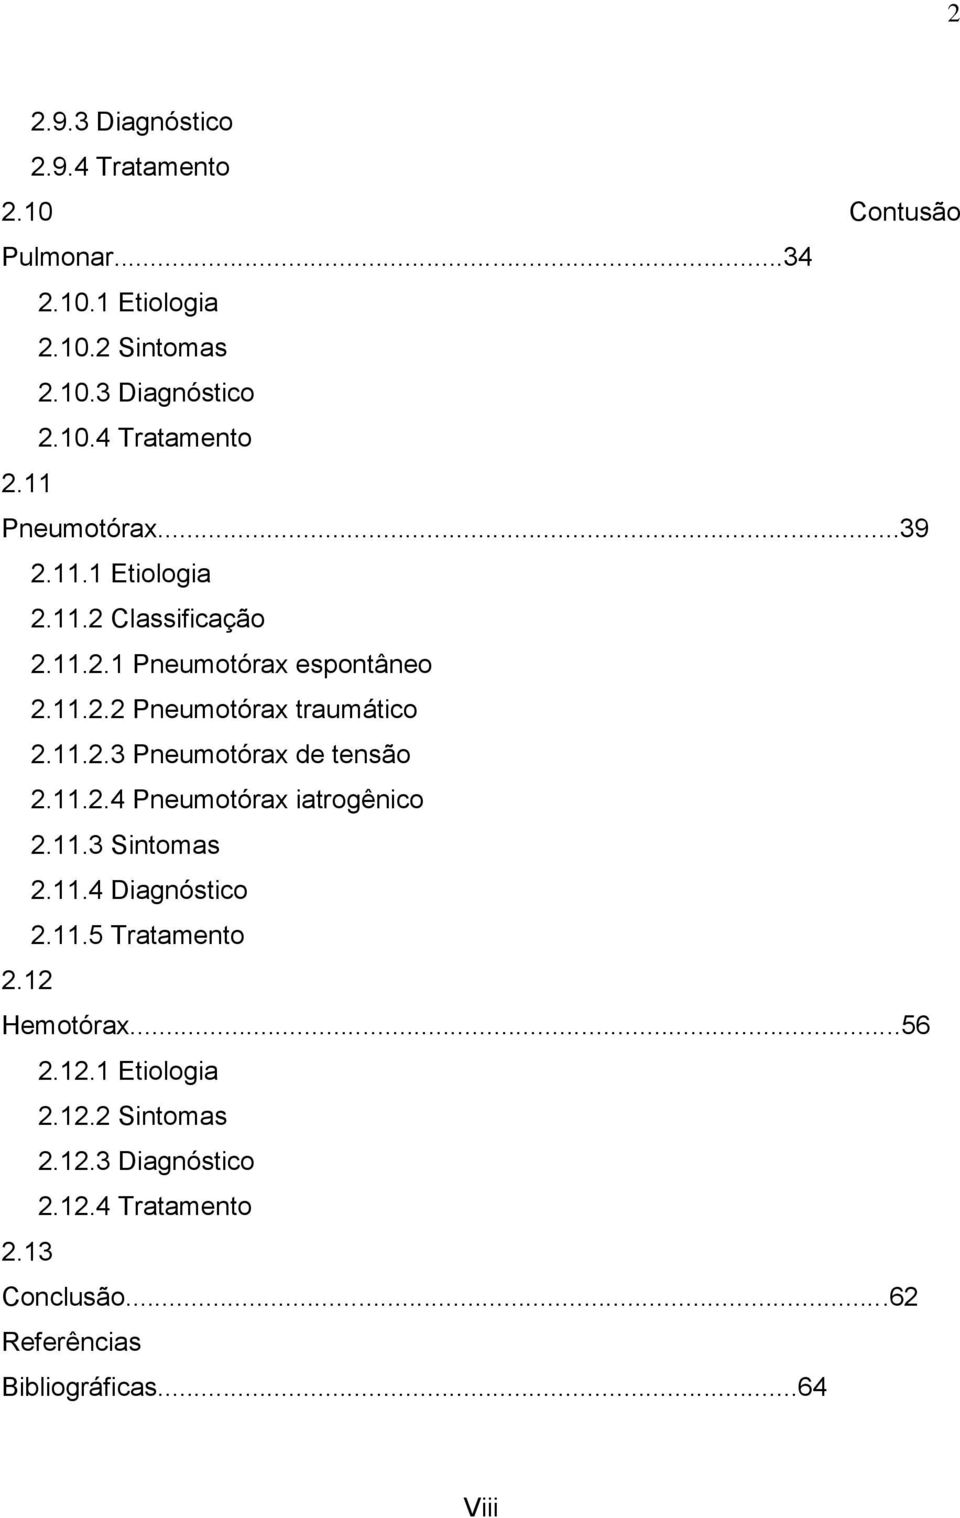 11.2.4 Pneumotórax iatrogênico 2.11.3 Sintomas 2.11.4 Diagnóstico 2.11.5 Tratamento 2.12 Hemotórax...56 2.12.1 Etiologia 2.12.2 Sintomas 2.